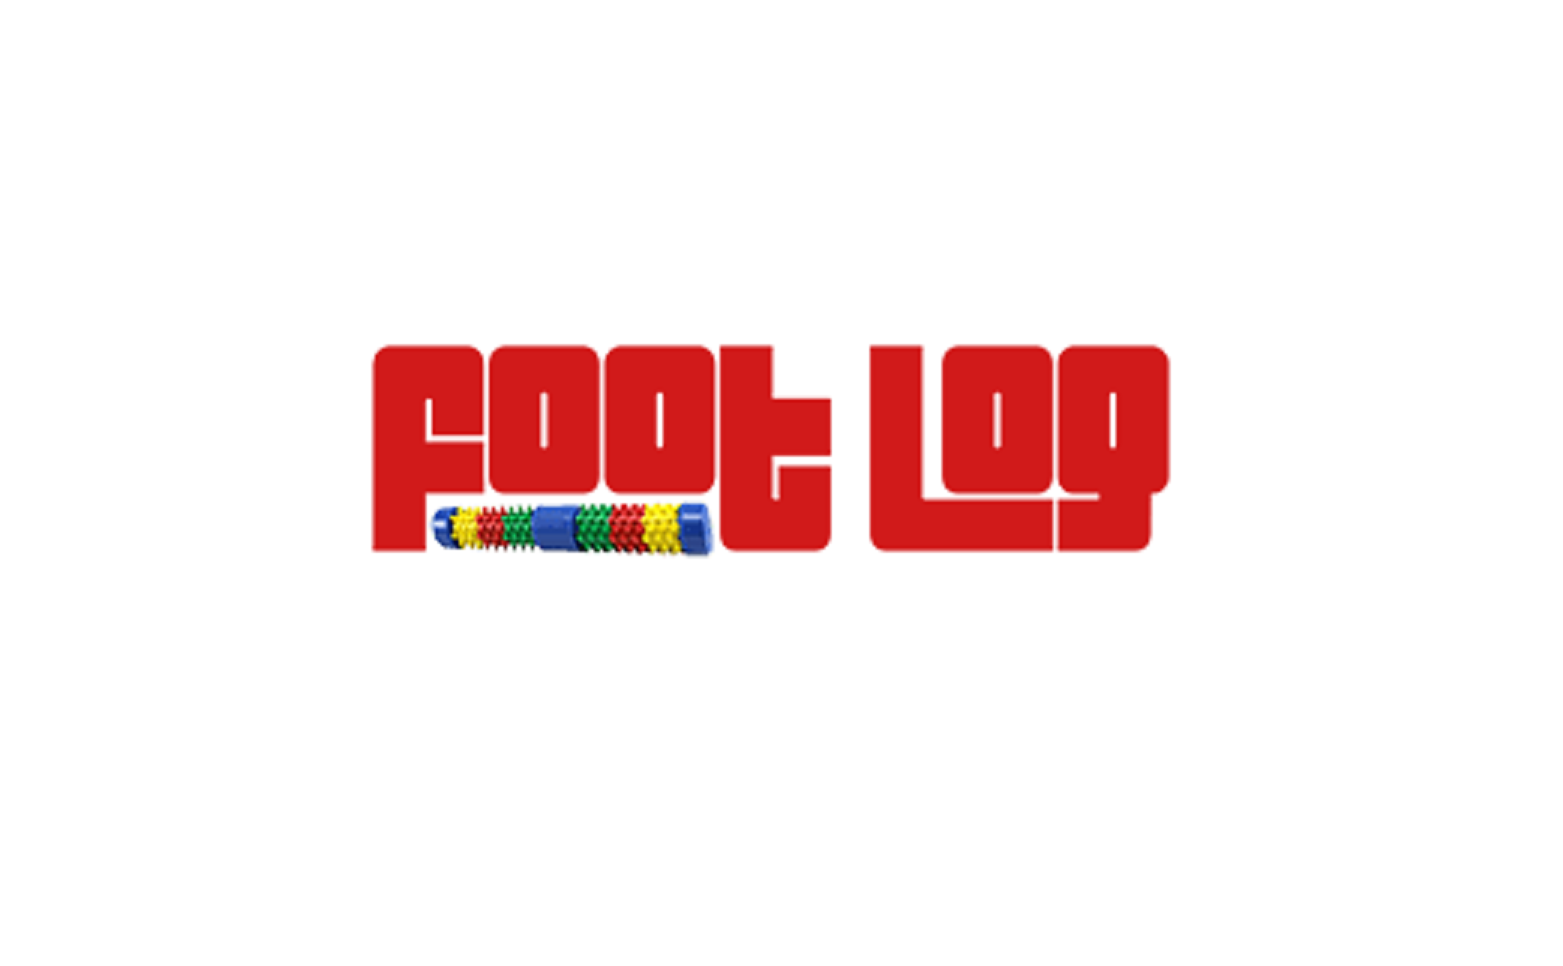 FootLog